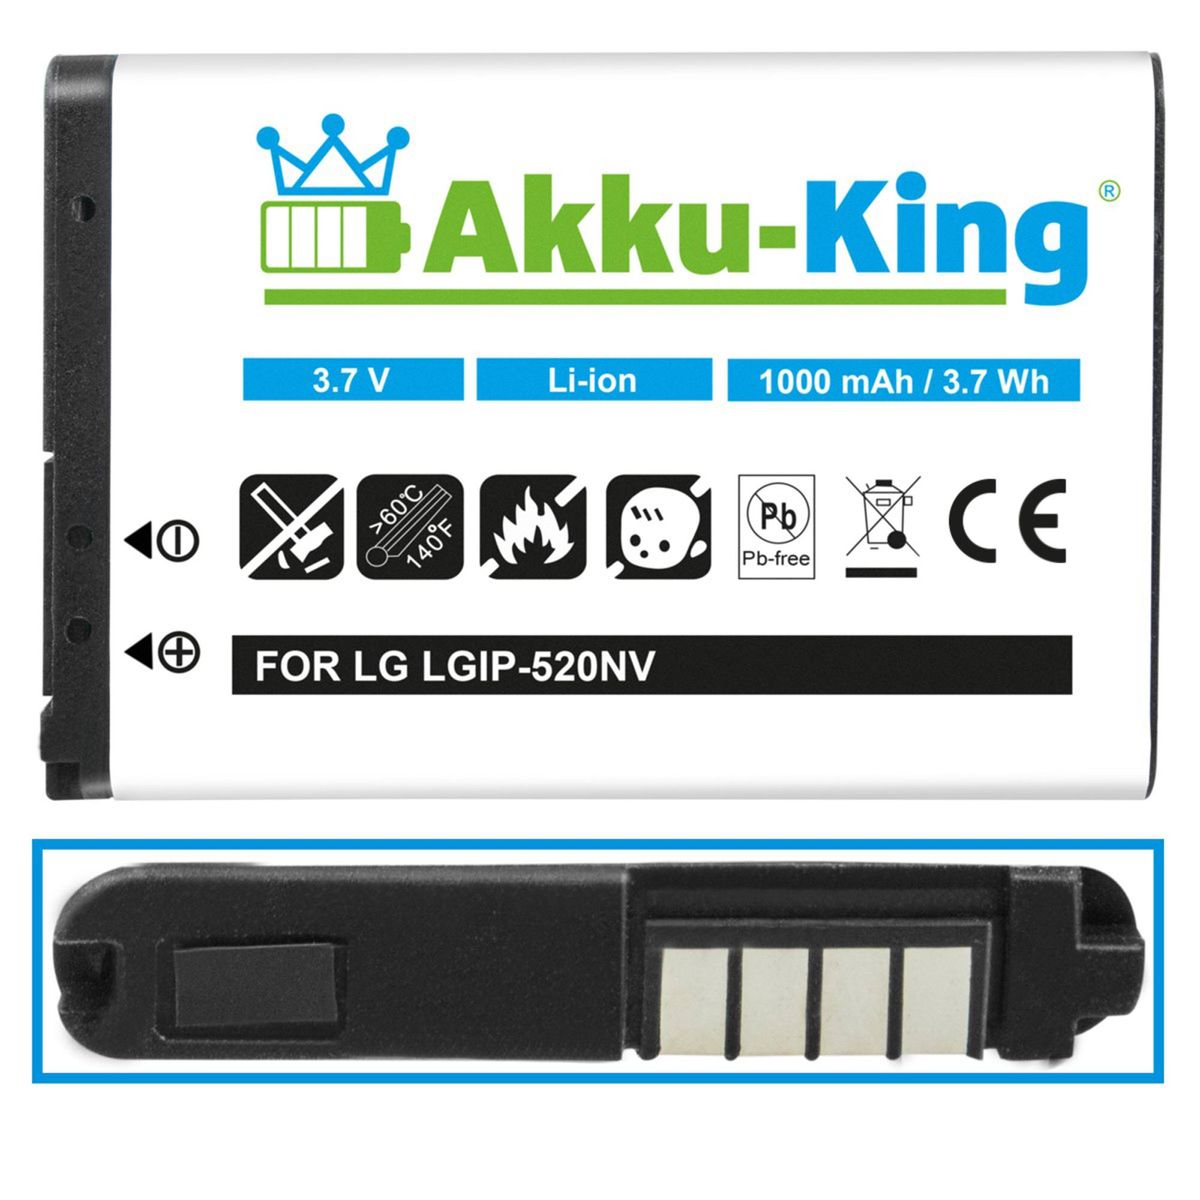 kompatibel AKKU-KING mit Akku Handy-Akku, LGIP-520N 3.7 1000mAh LG Volt, Li-Ion